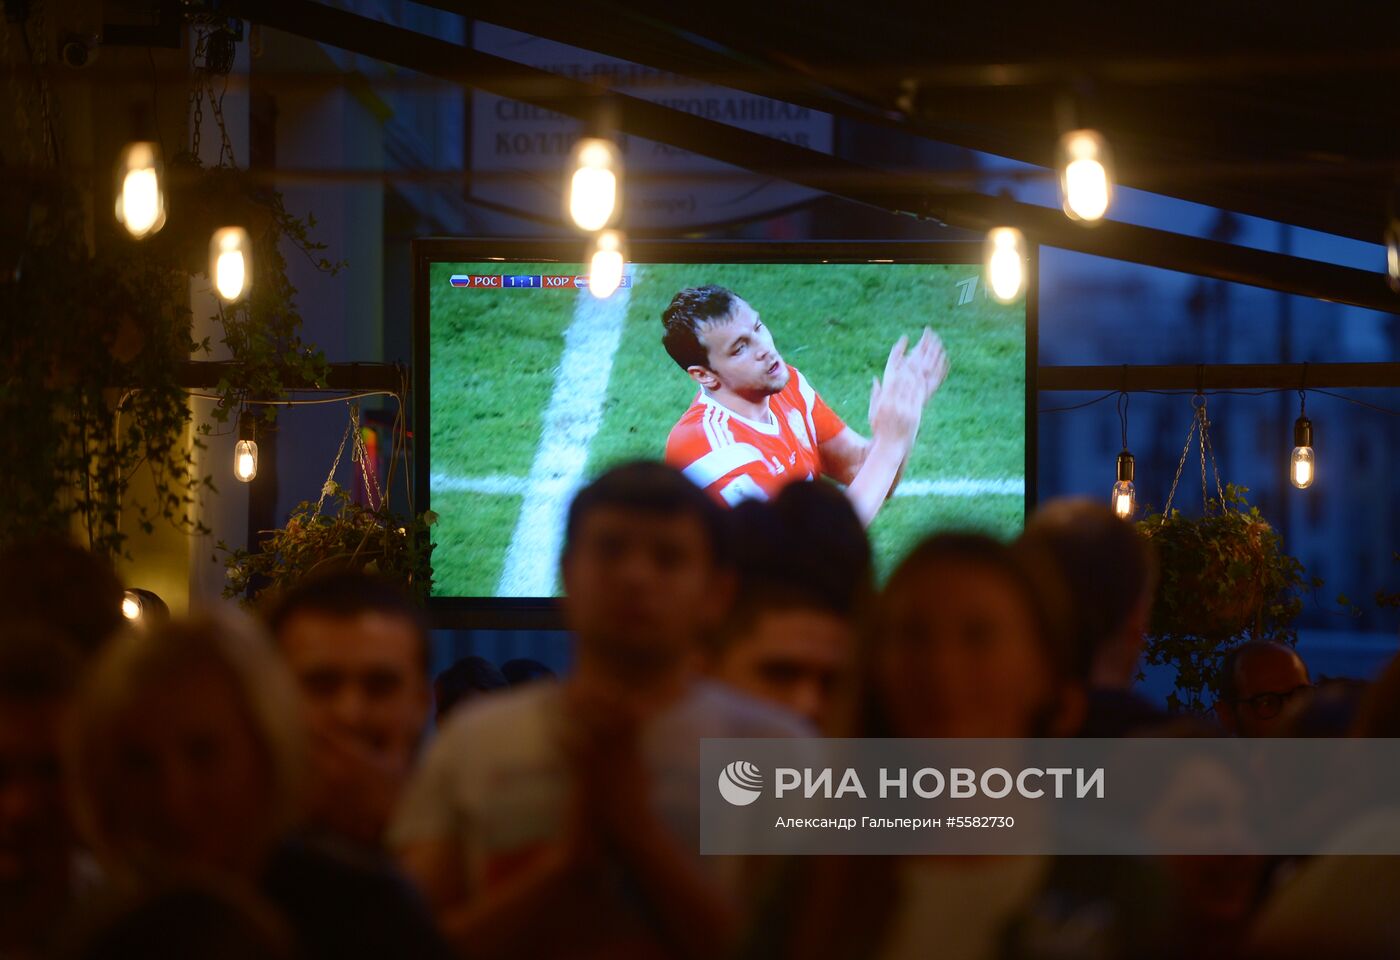 Просмотр матча ЧМ-2018 по футболу между сборными России и Хорватии